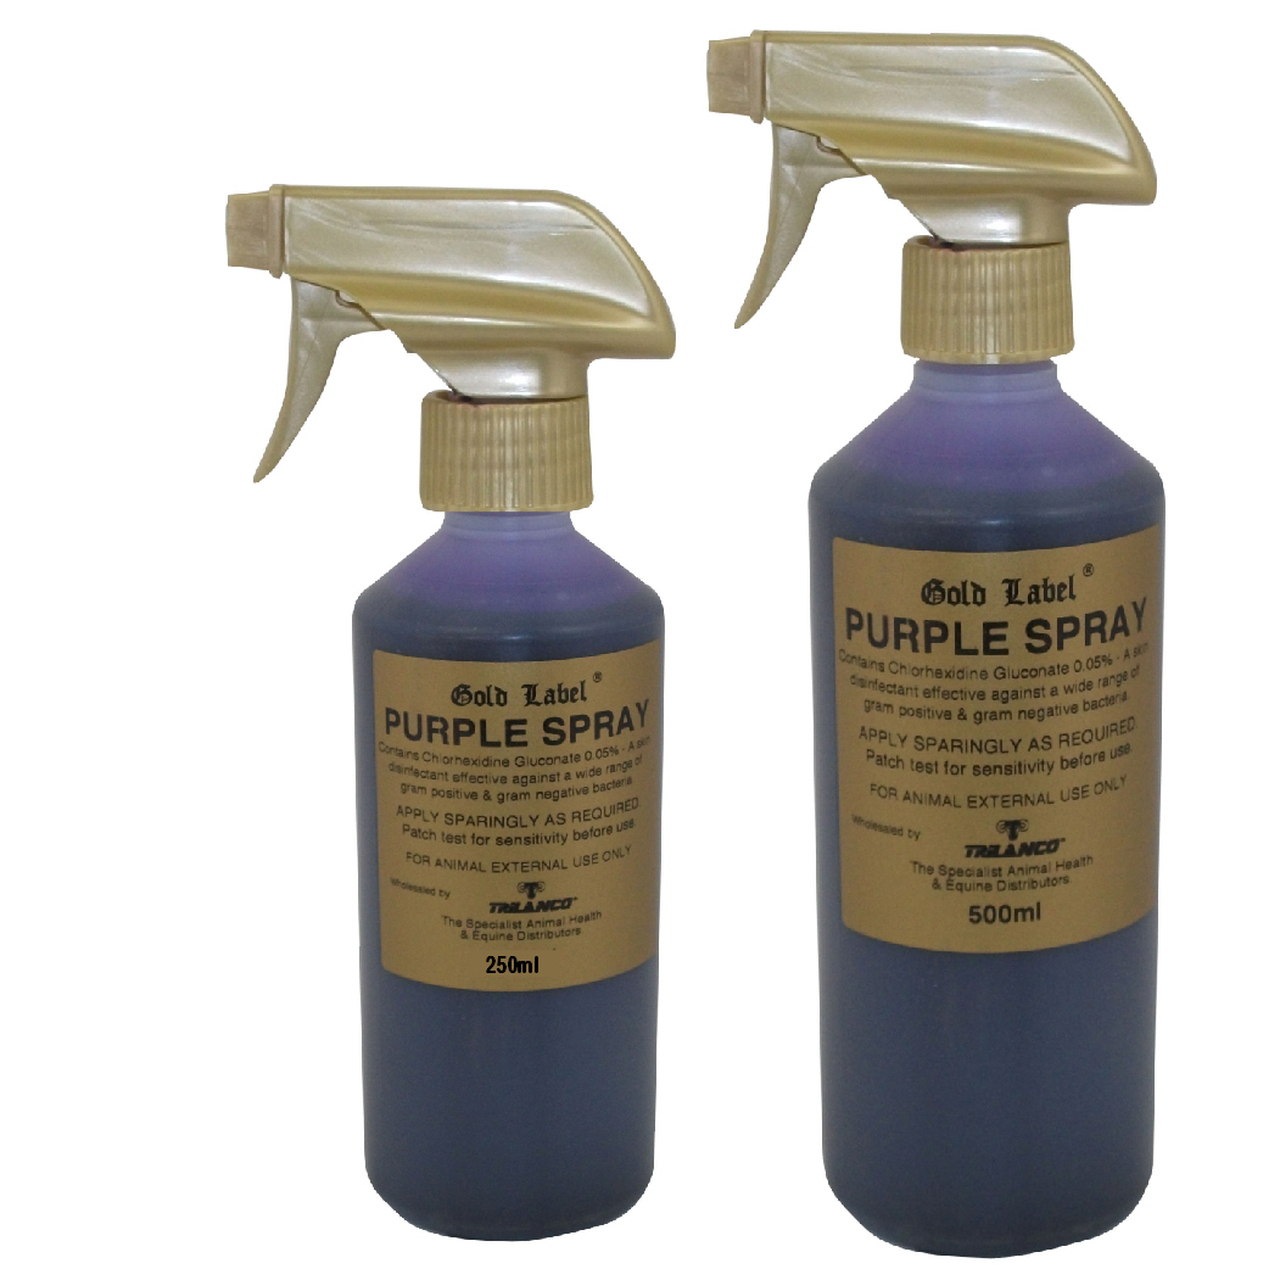 Purple-spray-MAIN-14579.1529445240.jpg